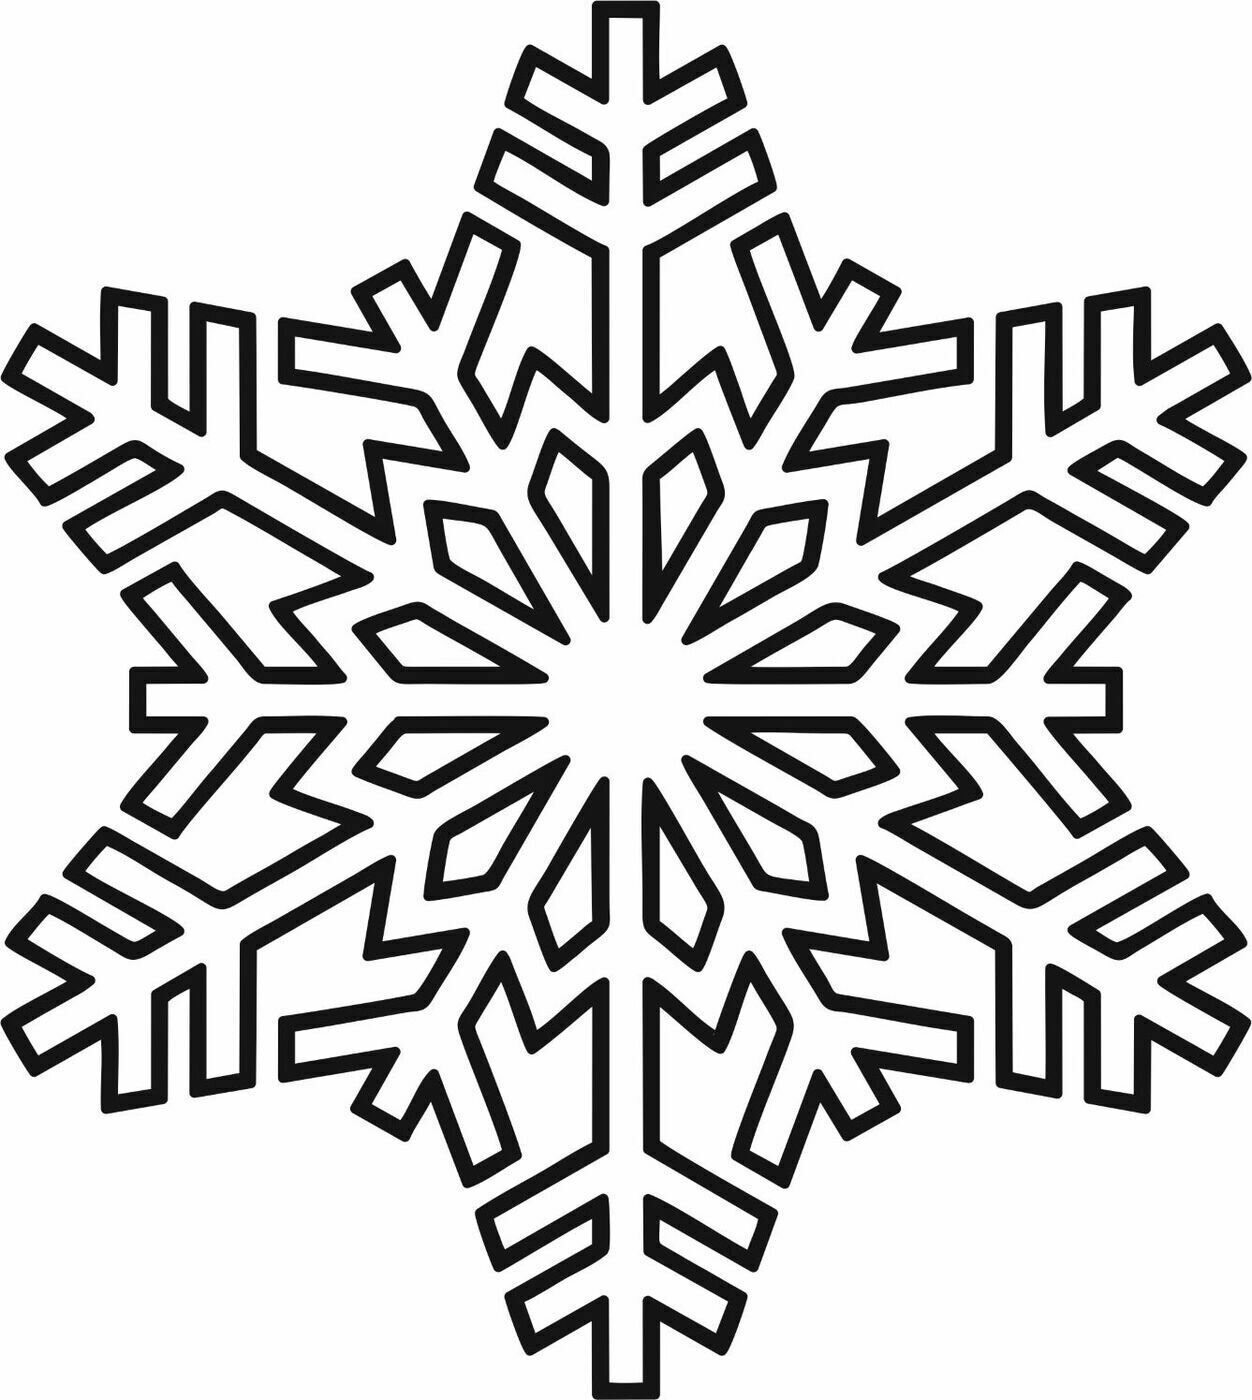 Шаблоны снежинок шаблоны для вырезания: Снежинки Шаблоны Для Вырезания Из Бумаги Распечатать